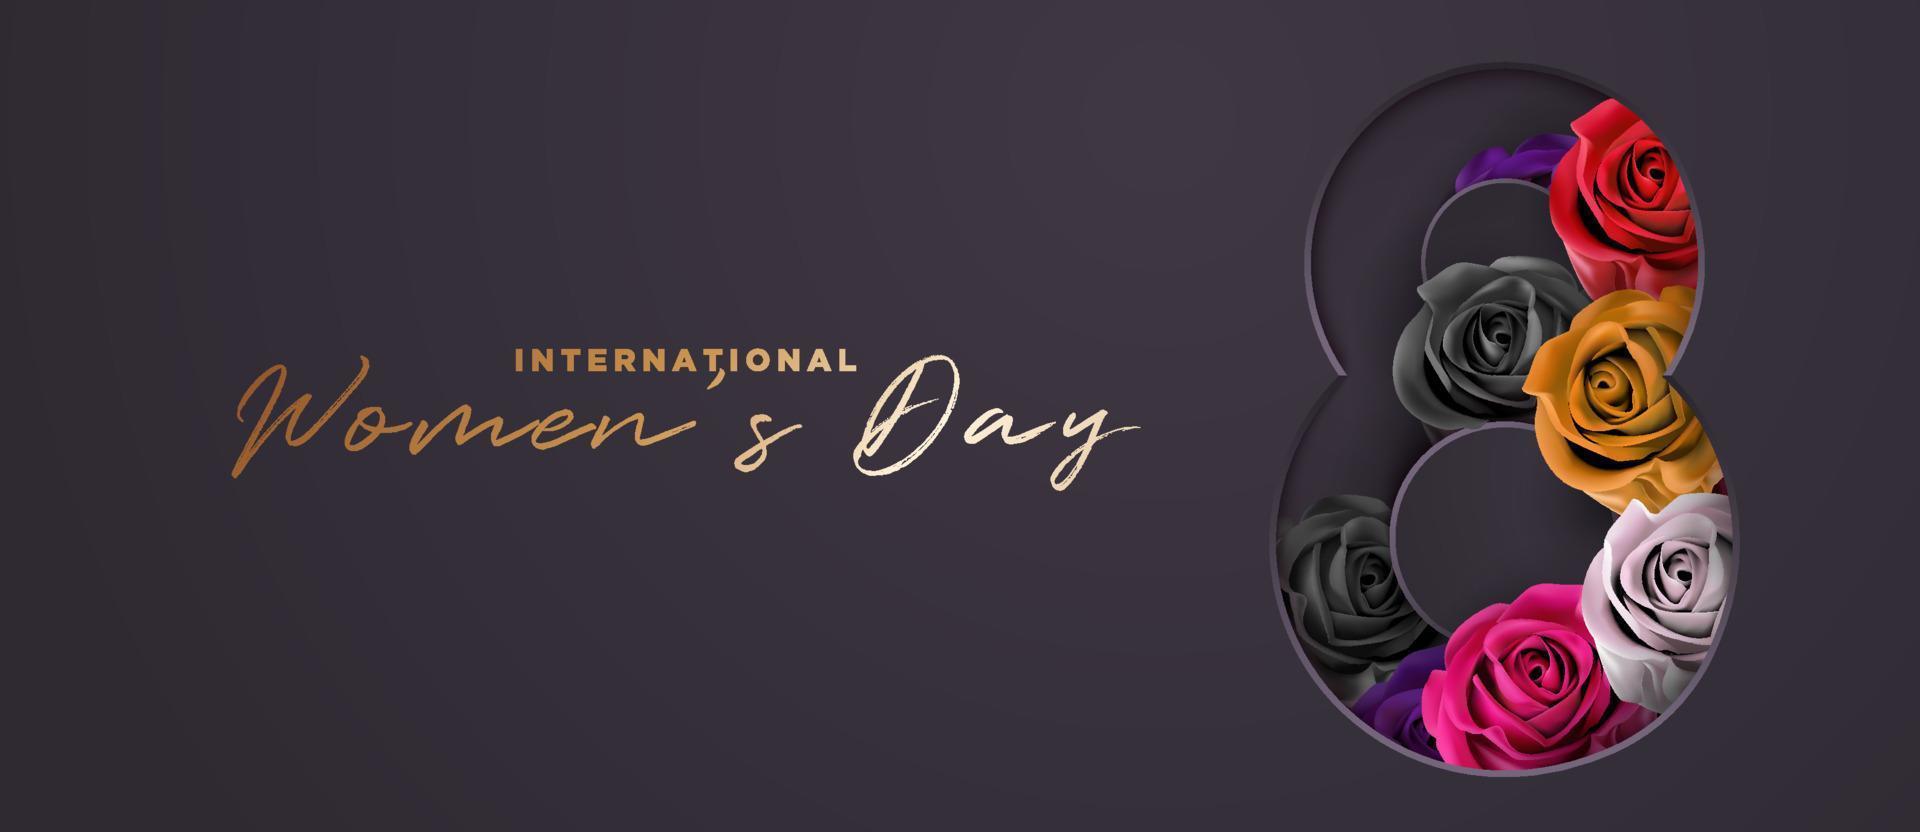 elegante lusso nero e oro con fiore rosa colorato 8 marzo festa internazionale della donna banner modello di sfondo vettore